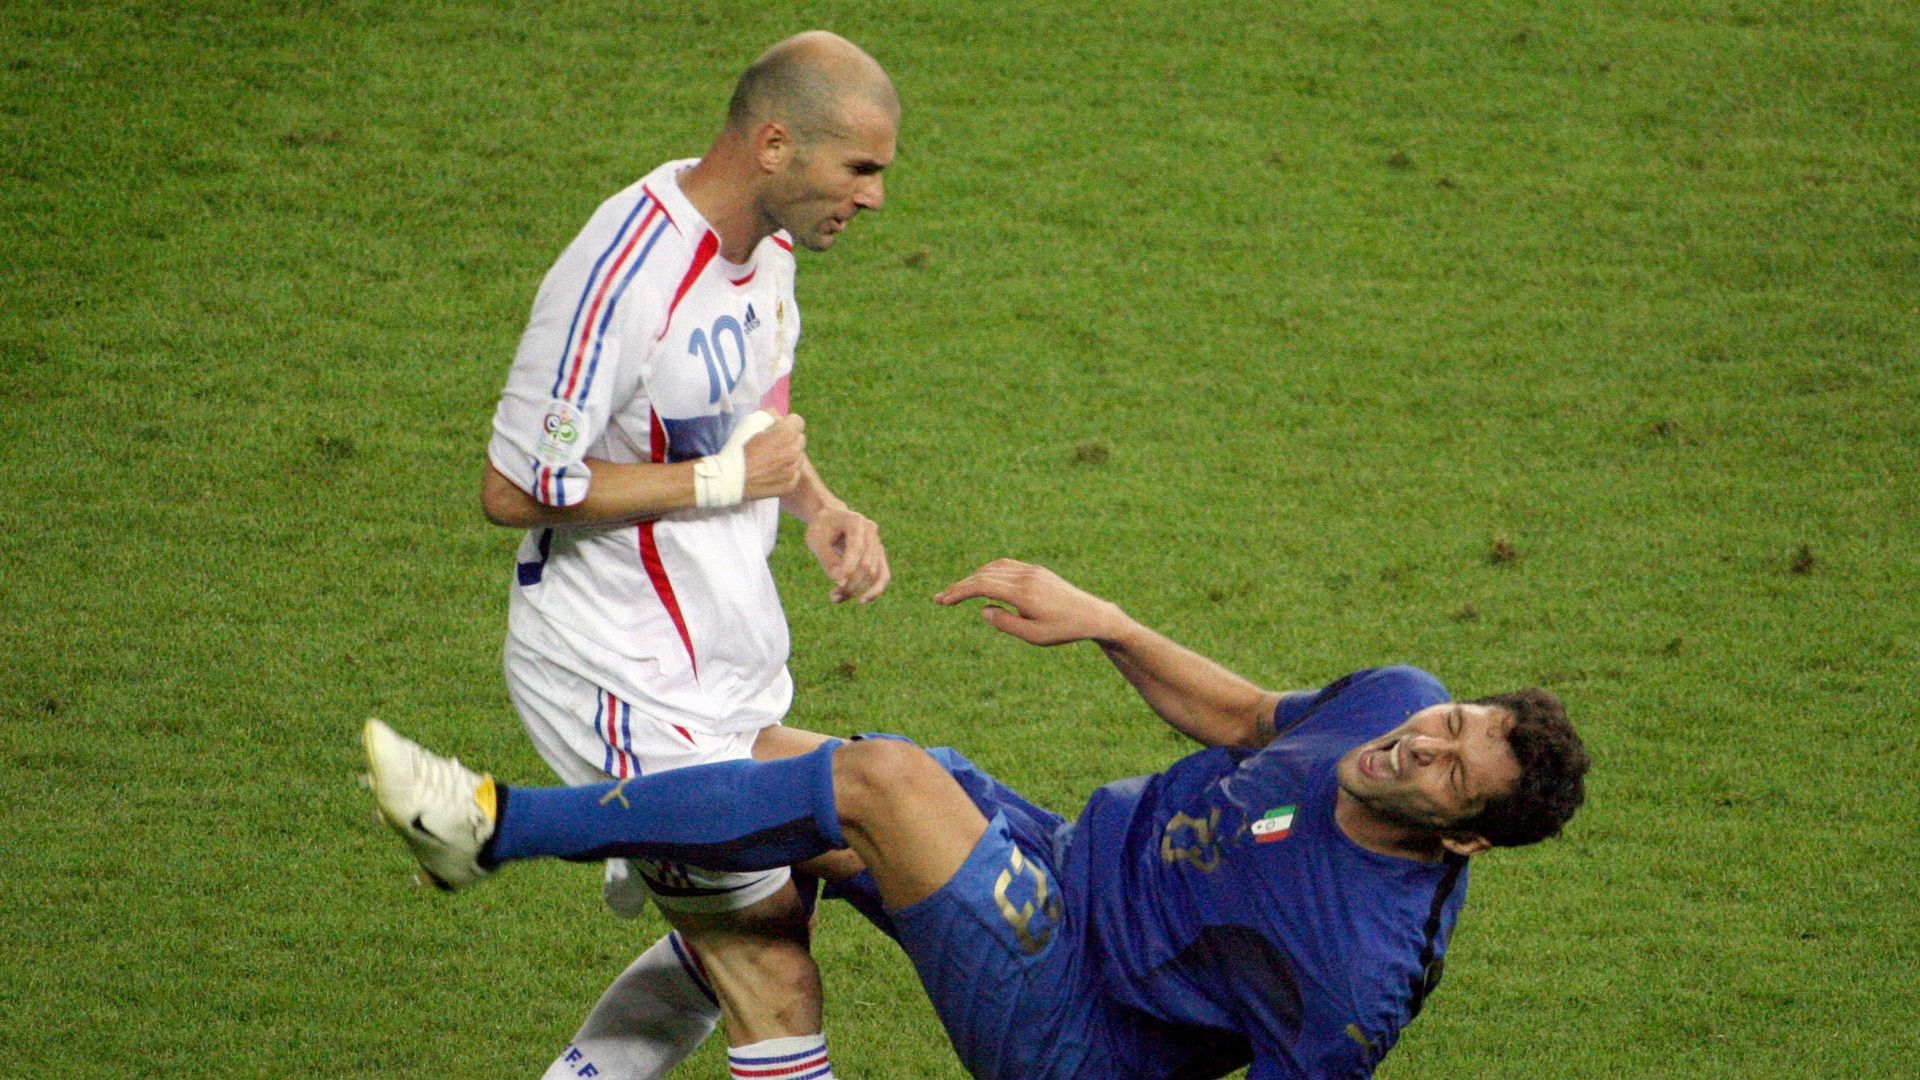 Zidane adresse un coup de tête à Materazzi et voit sa carrière prendre fin instantanément.